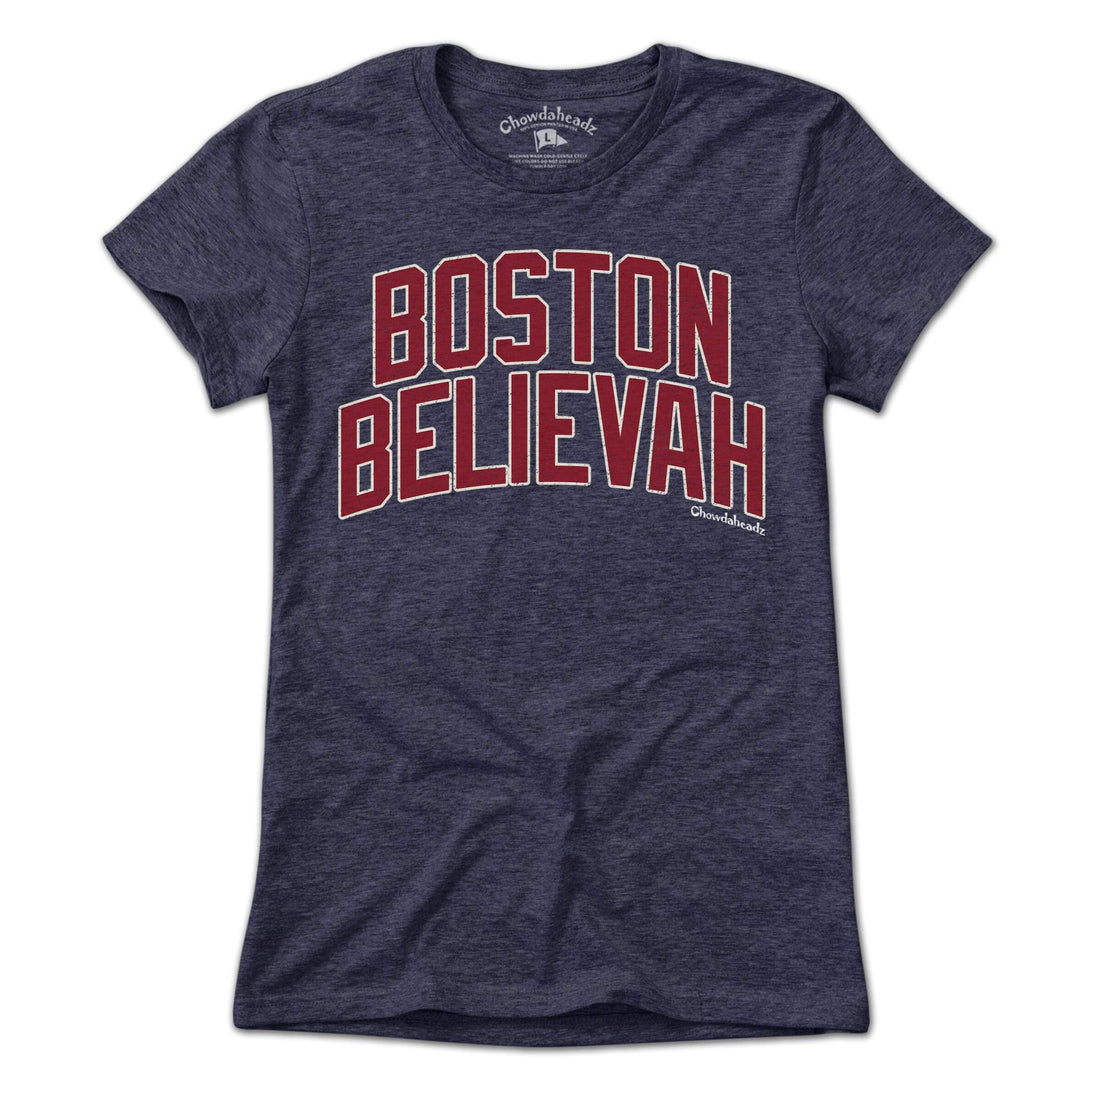 Boston Believah Baseball T-Shirt - Chowdaheadz